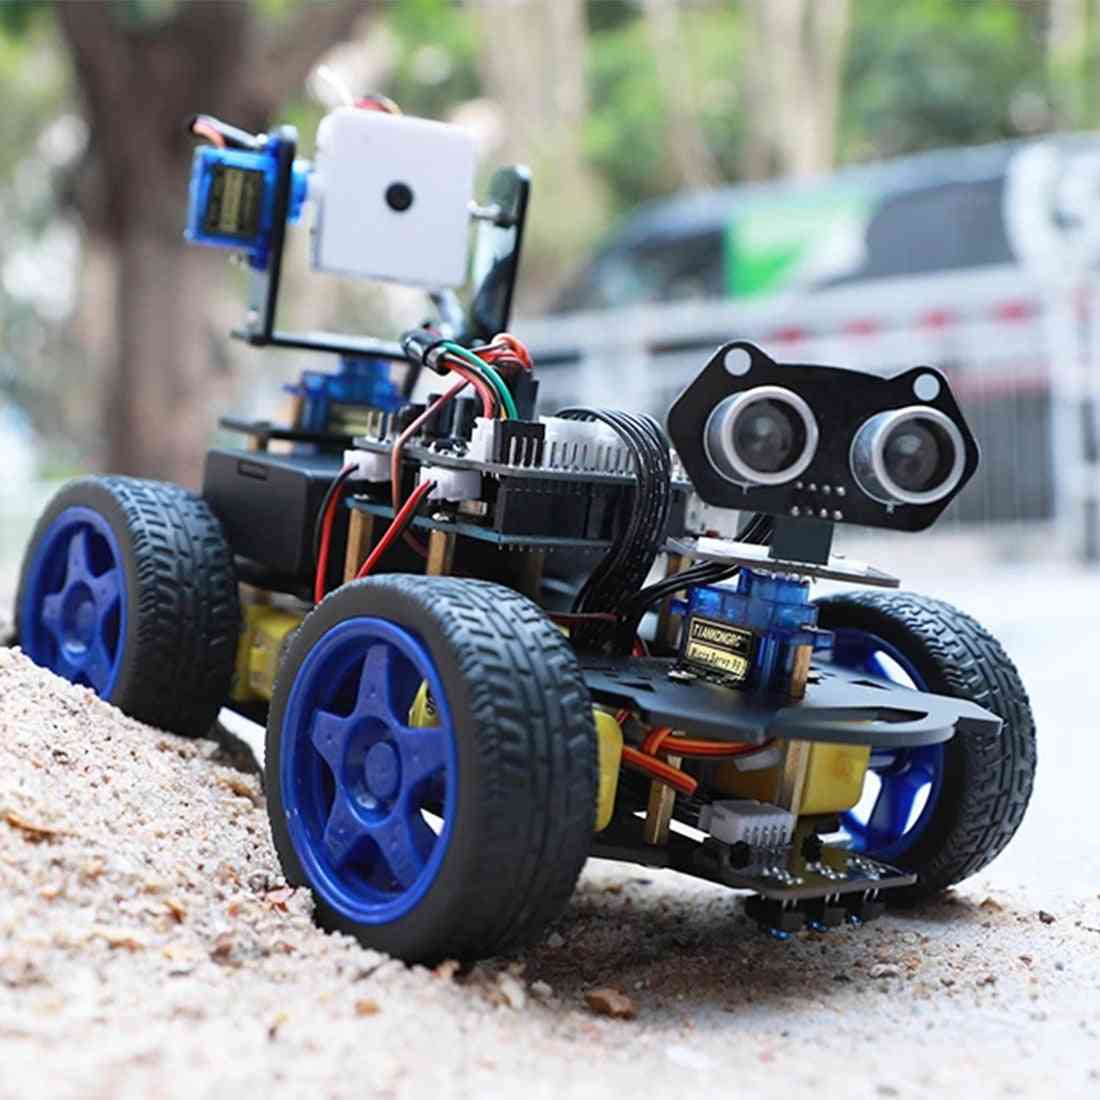 Módulo ultrassônico luminescente, carro robô inteligente, câmera wi-fi, kit cardan para arduino